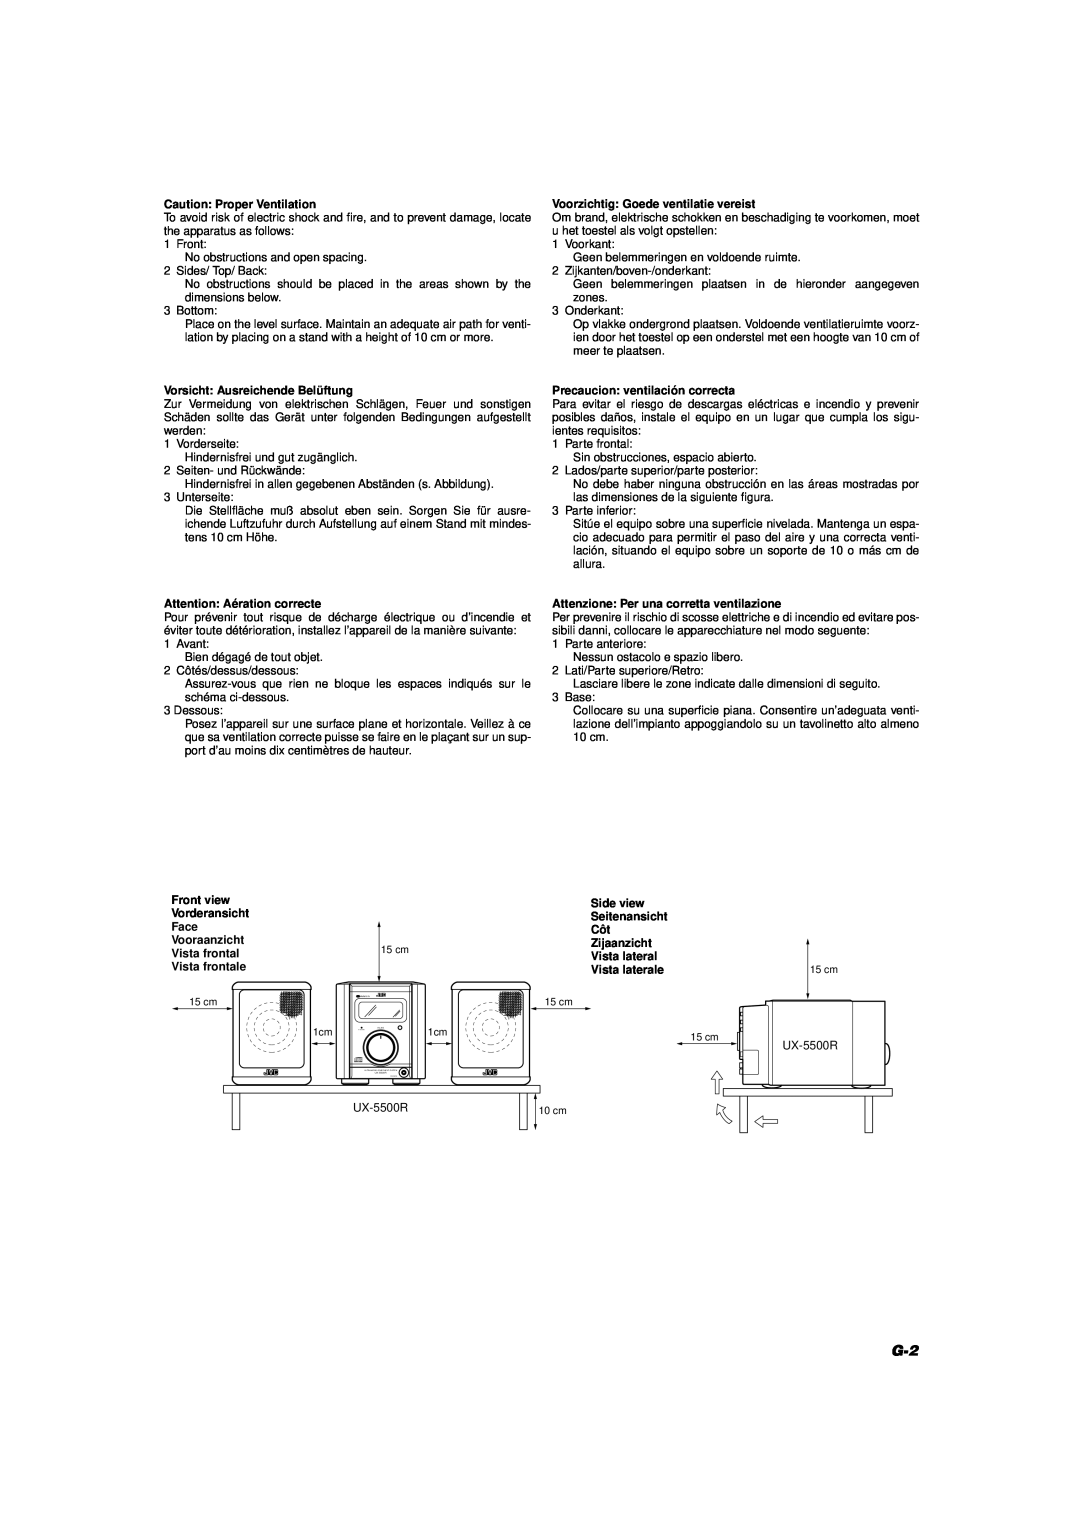 JVC UX-5500R manual Caution Proper Ventilation, Vorsicht Ausreichende Belüftung, Attention Aération correcte 